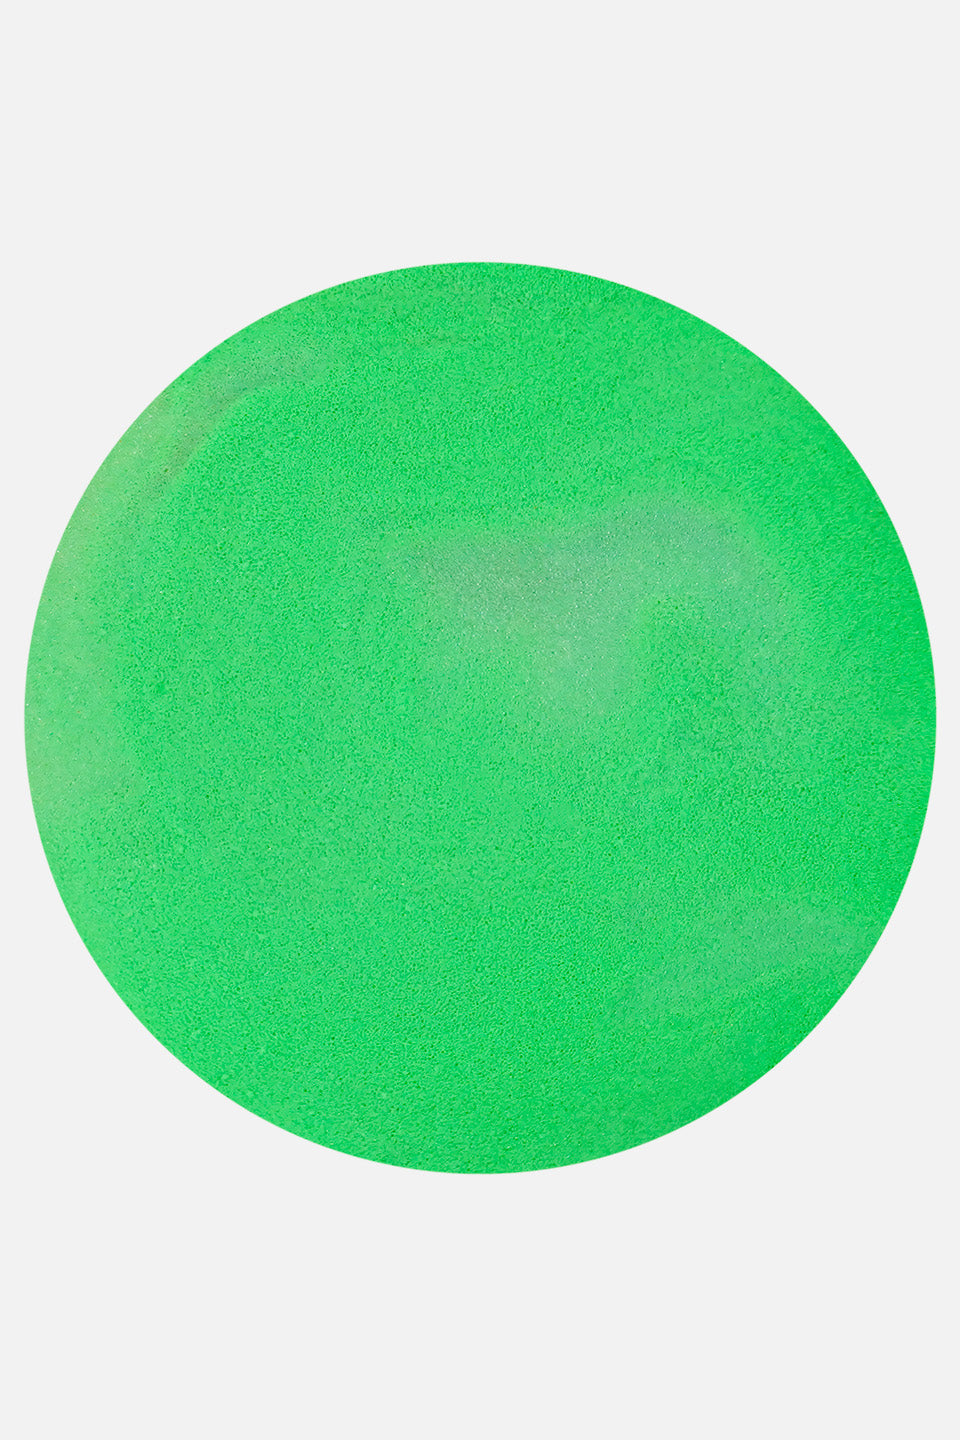 Polvere acrilica verde neon 5 g